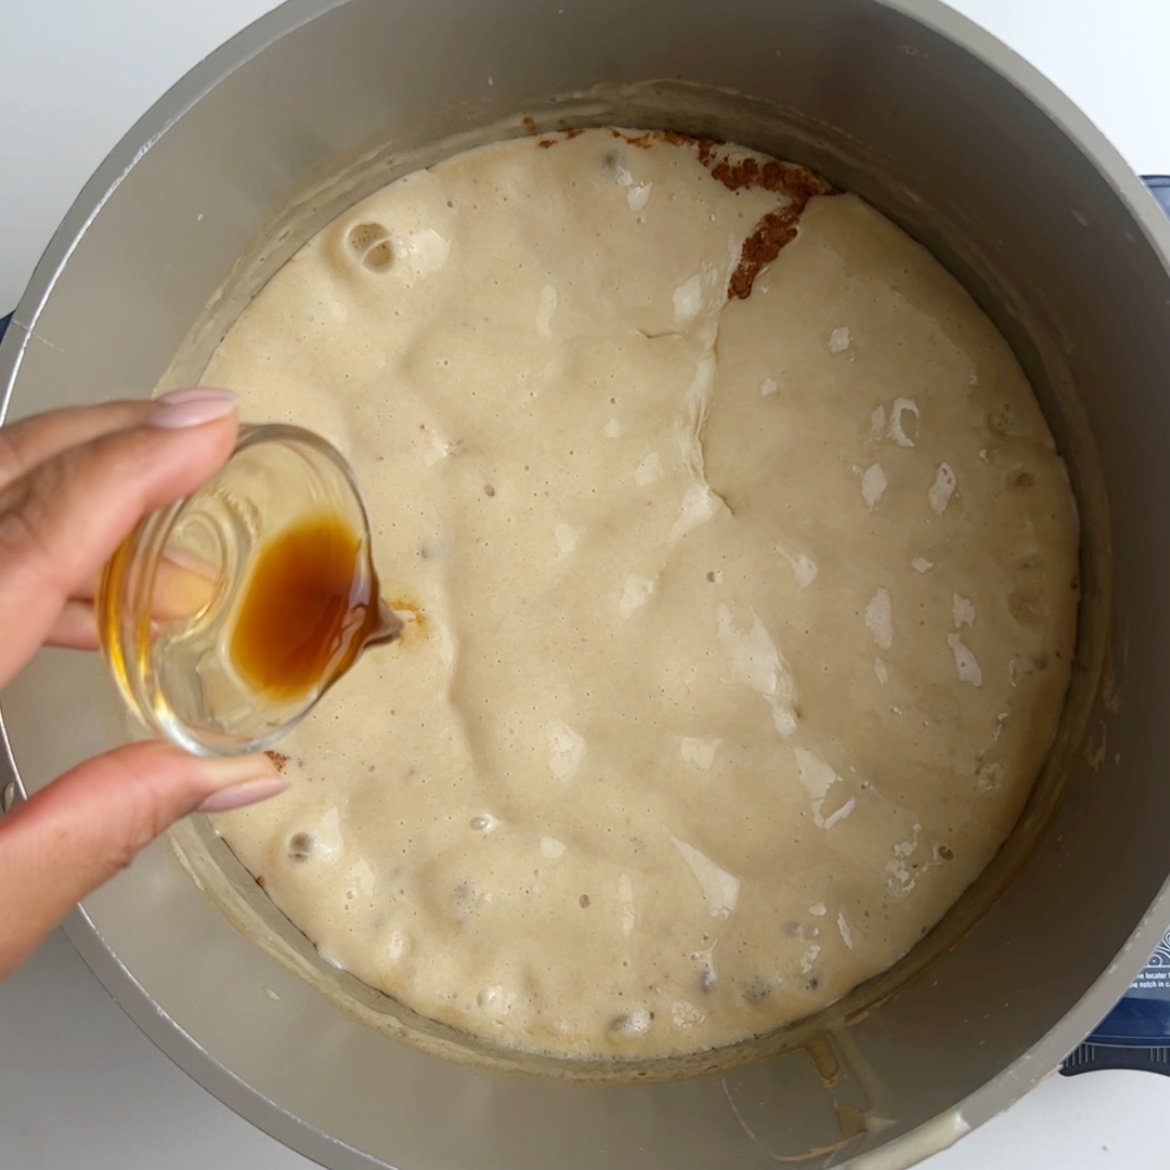 Adding vanilla to a pot of boiling flour porridge